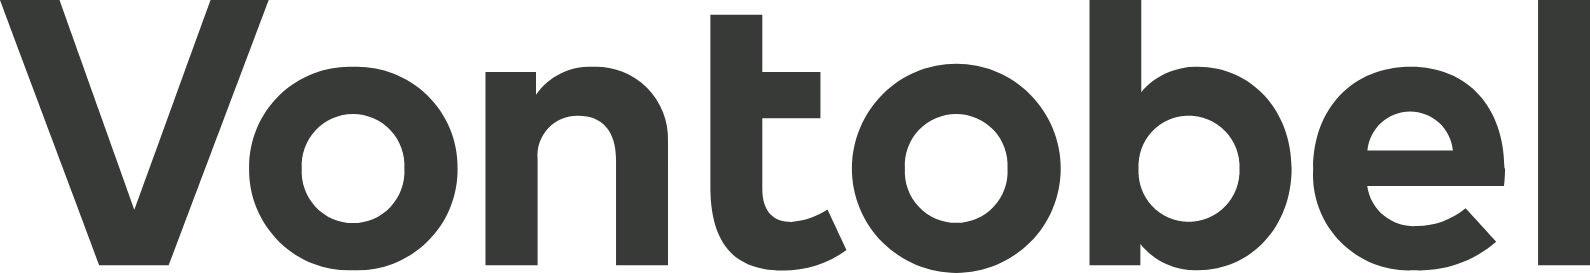 Vontobel logo large (transparent PNG)